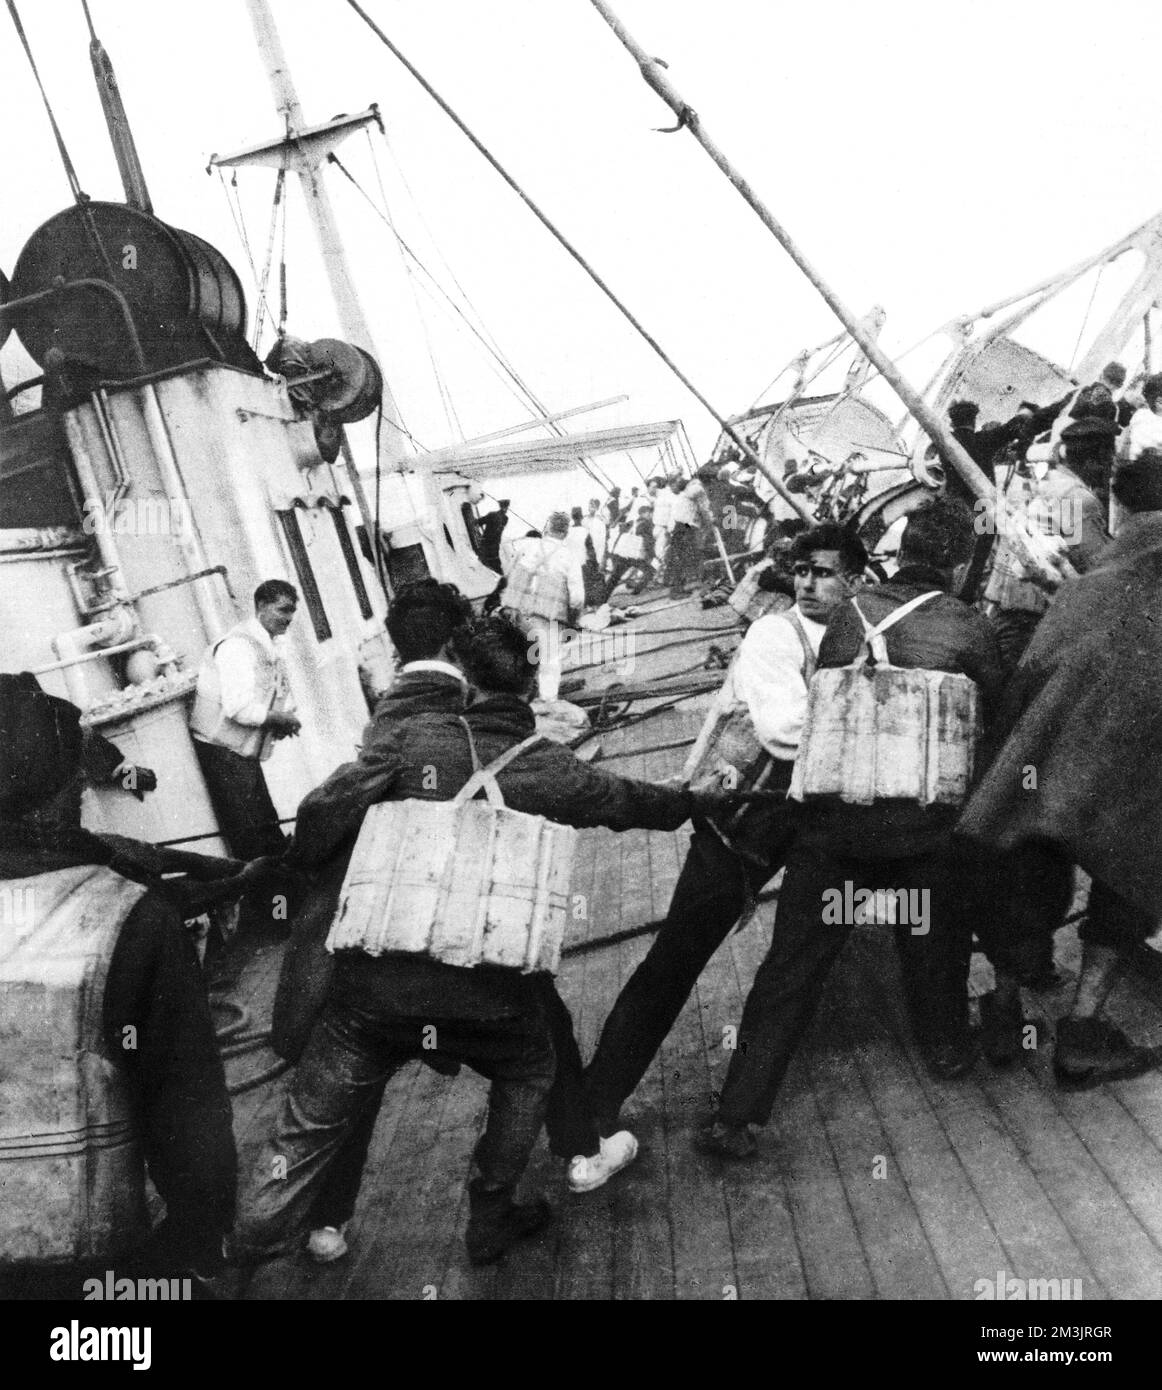 An Bord der sinkenden Vesris; ein Foto, das an Deck nur Sekunden vor dem Absturz des Schiffs aufgenommen wurde und Menschen in Rettungsbooten zeigt, die auf die Rettungsboote zusteuern. Viele der Rettungsboote kenterten und Menschen sprangen von den steil abfallenden Decks, um sich selbst zu retten. Datum: 1928 Stockfoto